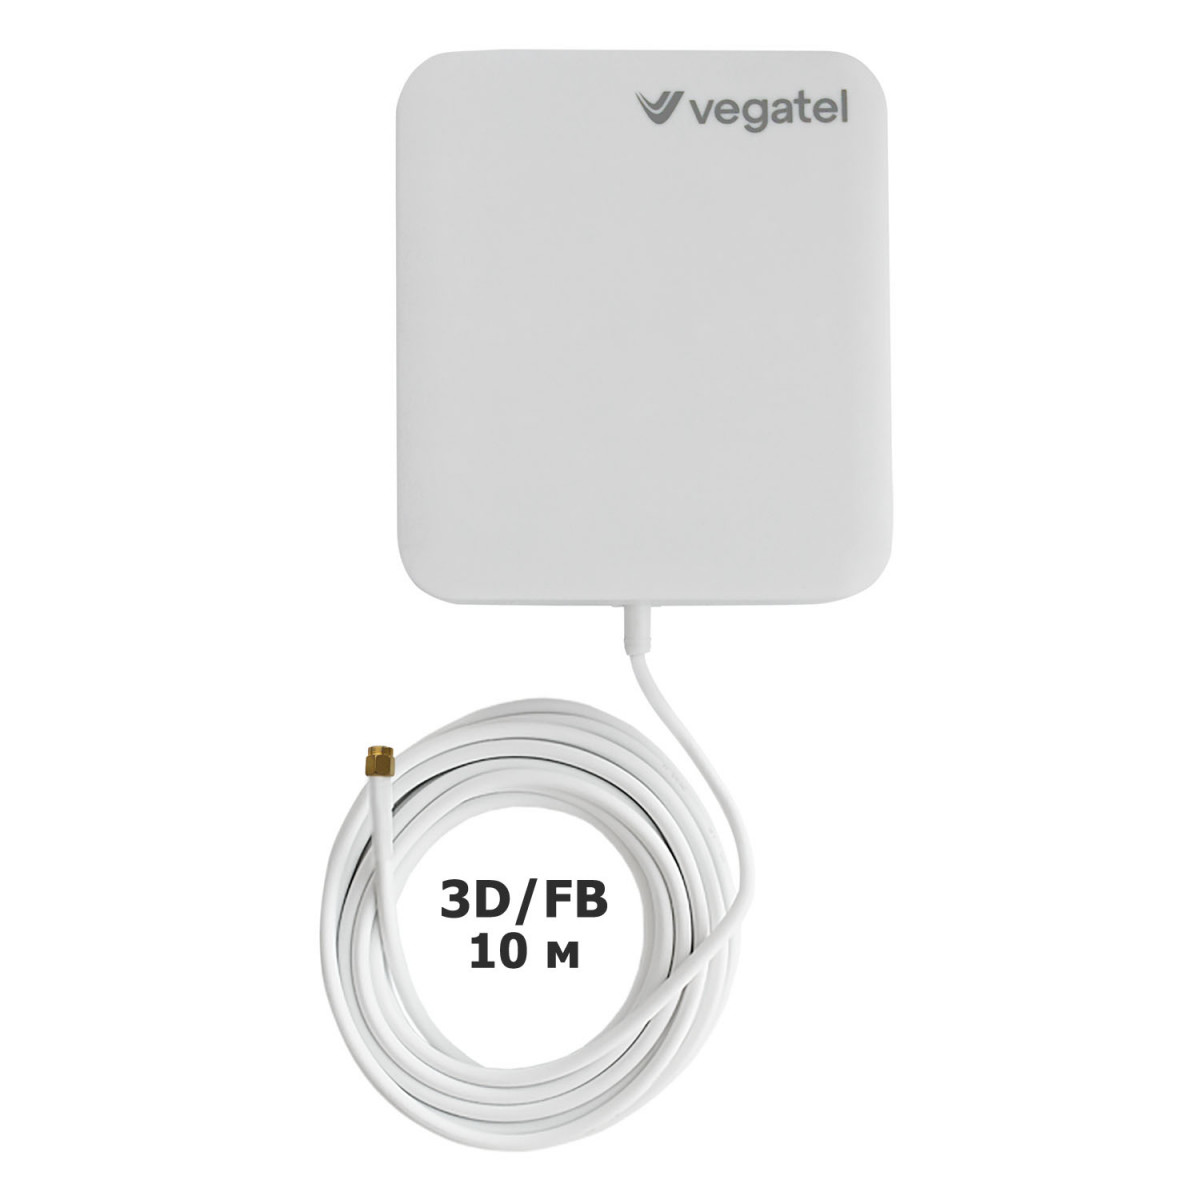 Детальное изображение товара "Комплект усиления сотовой связи Vegatel PL-1800/2100" из каталога оборудования Антенна76